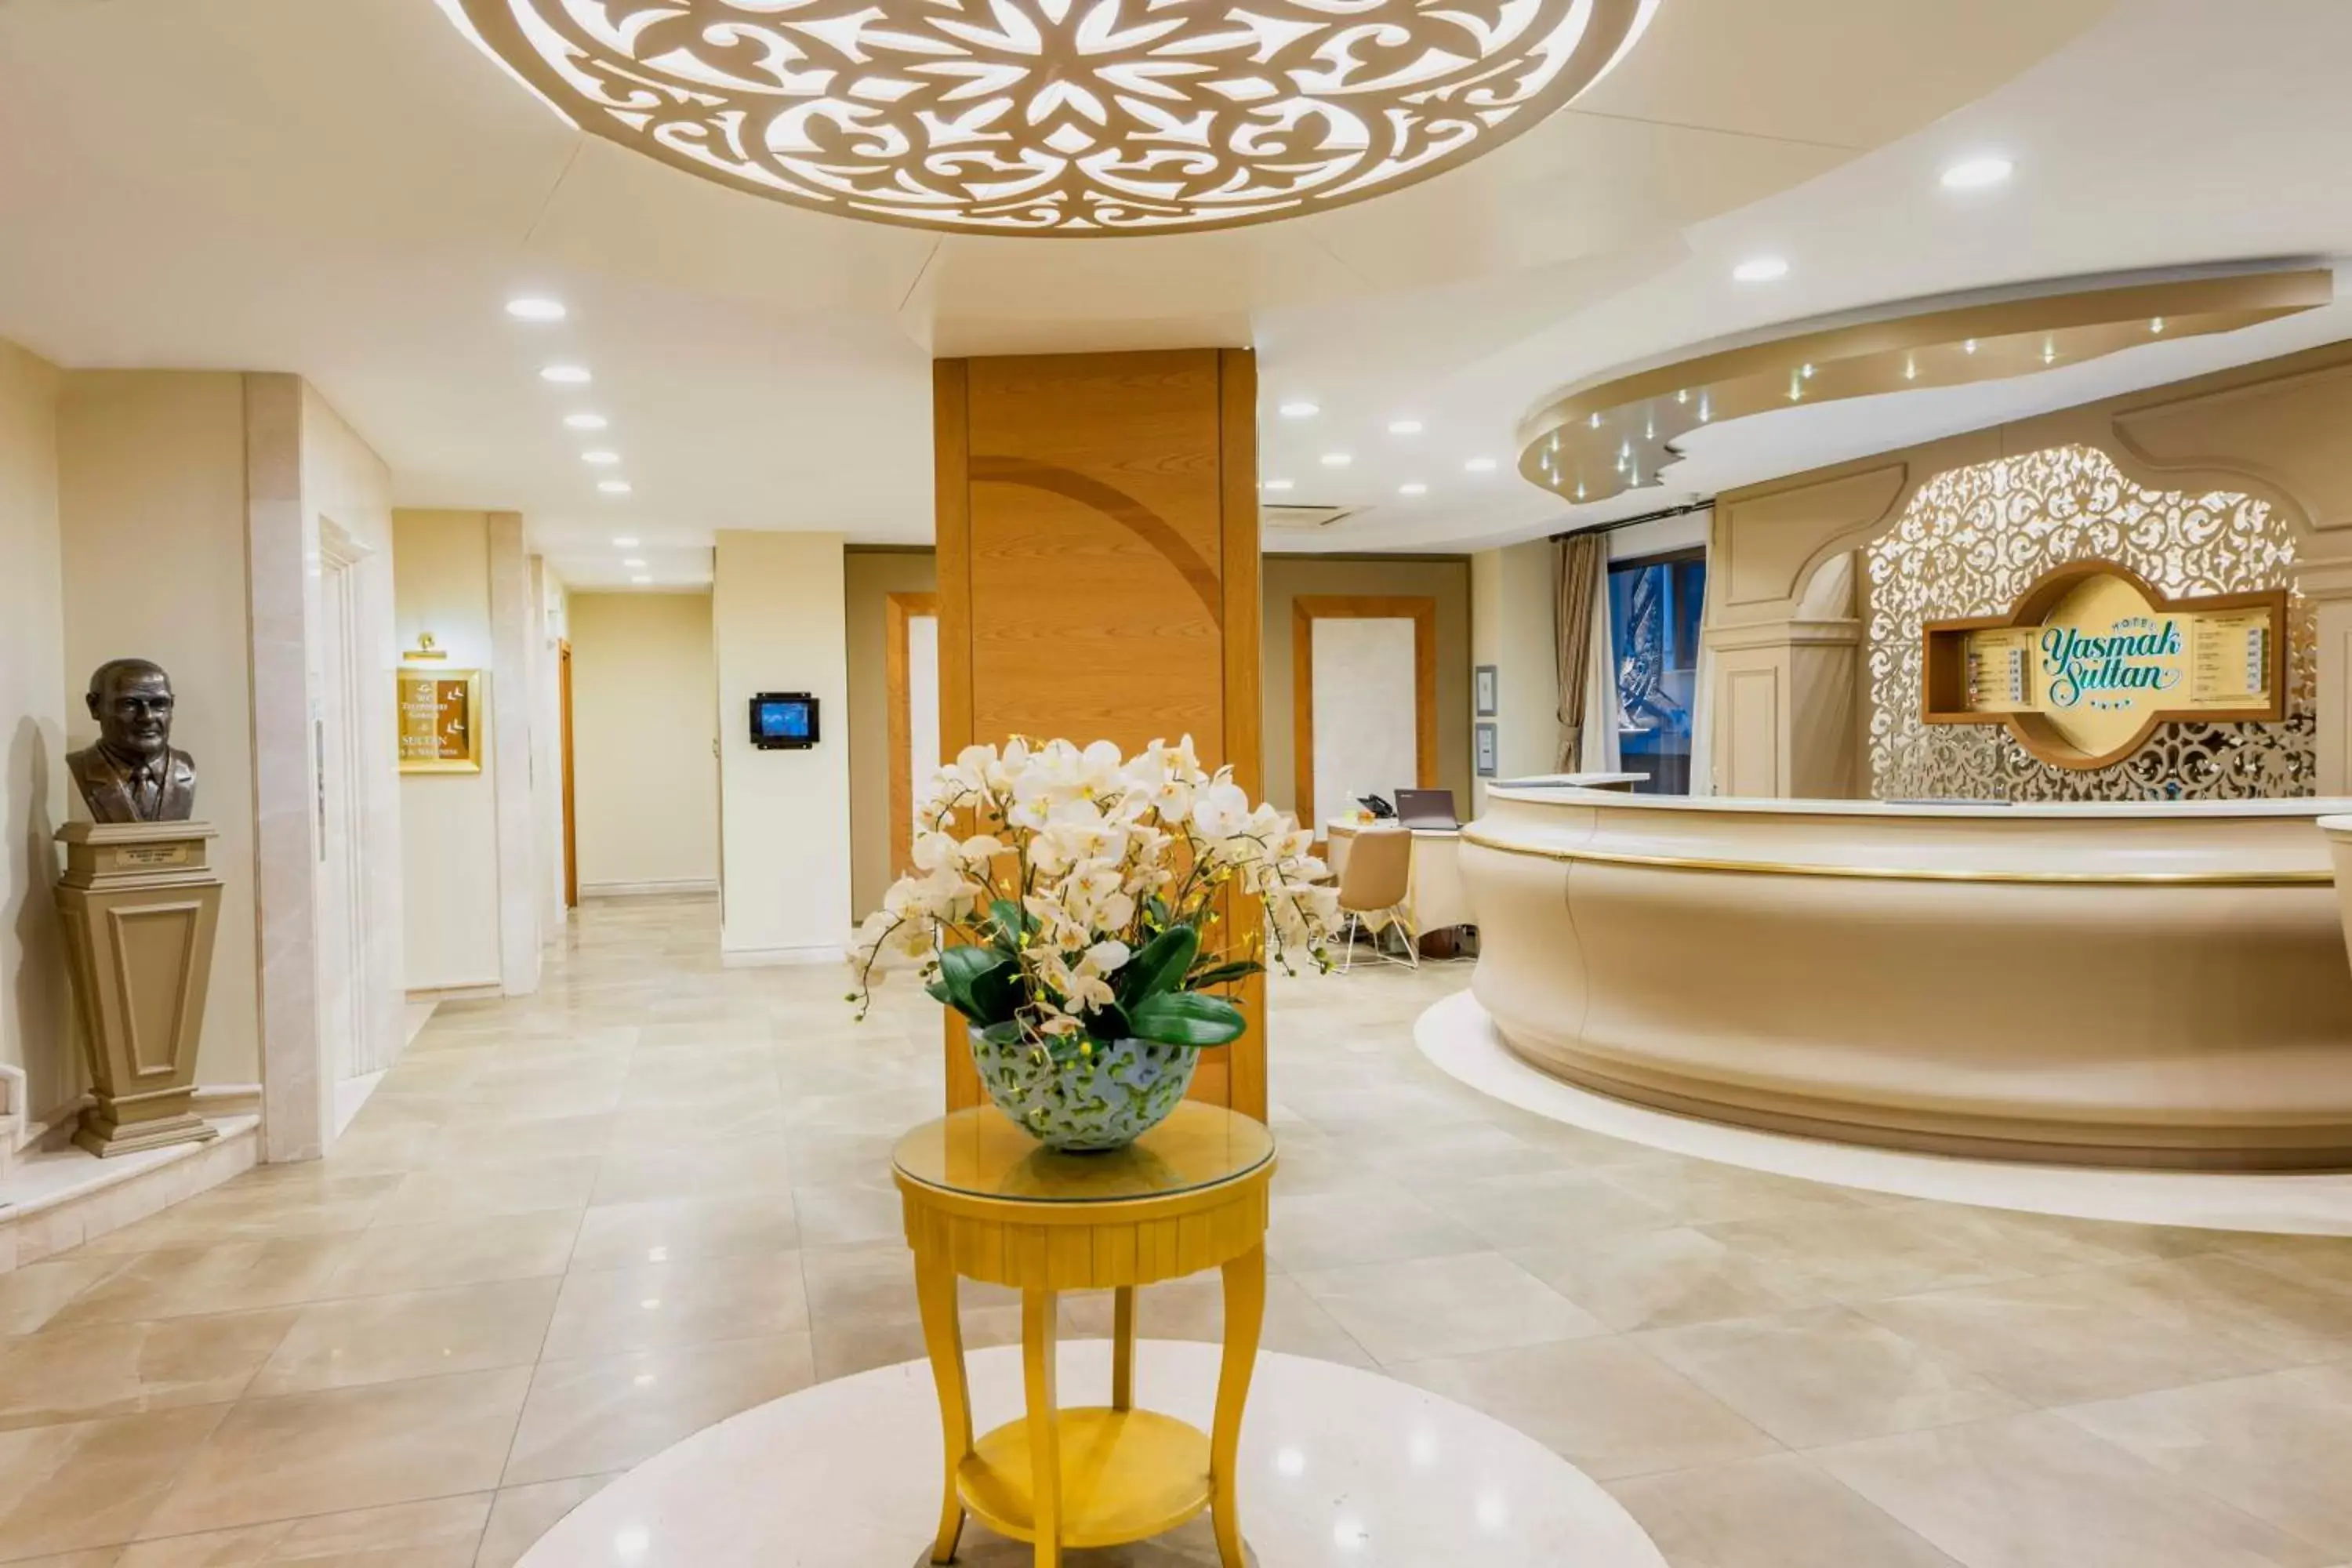 Lobby or reception, Lobby/Reception in Hotel Yasmak Sultan